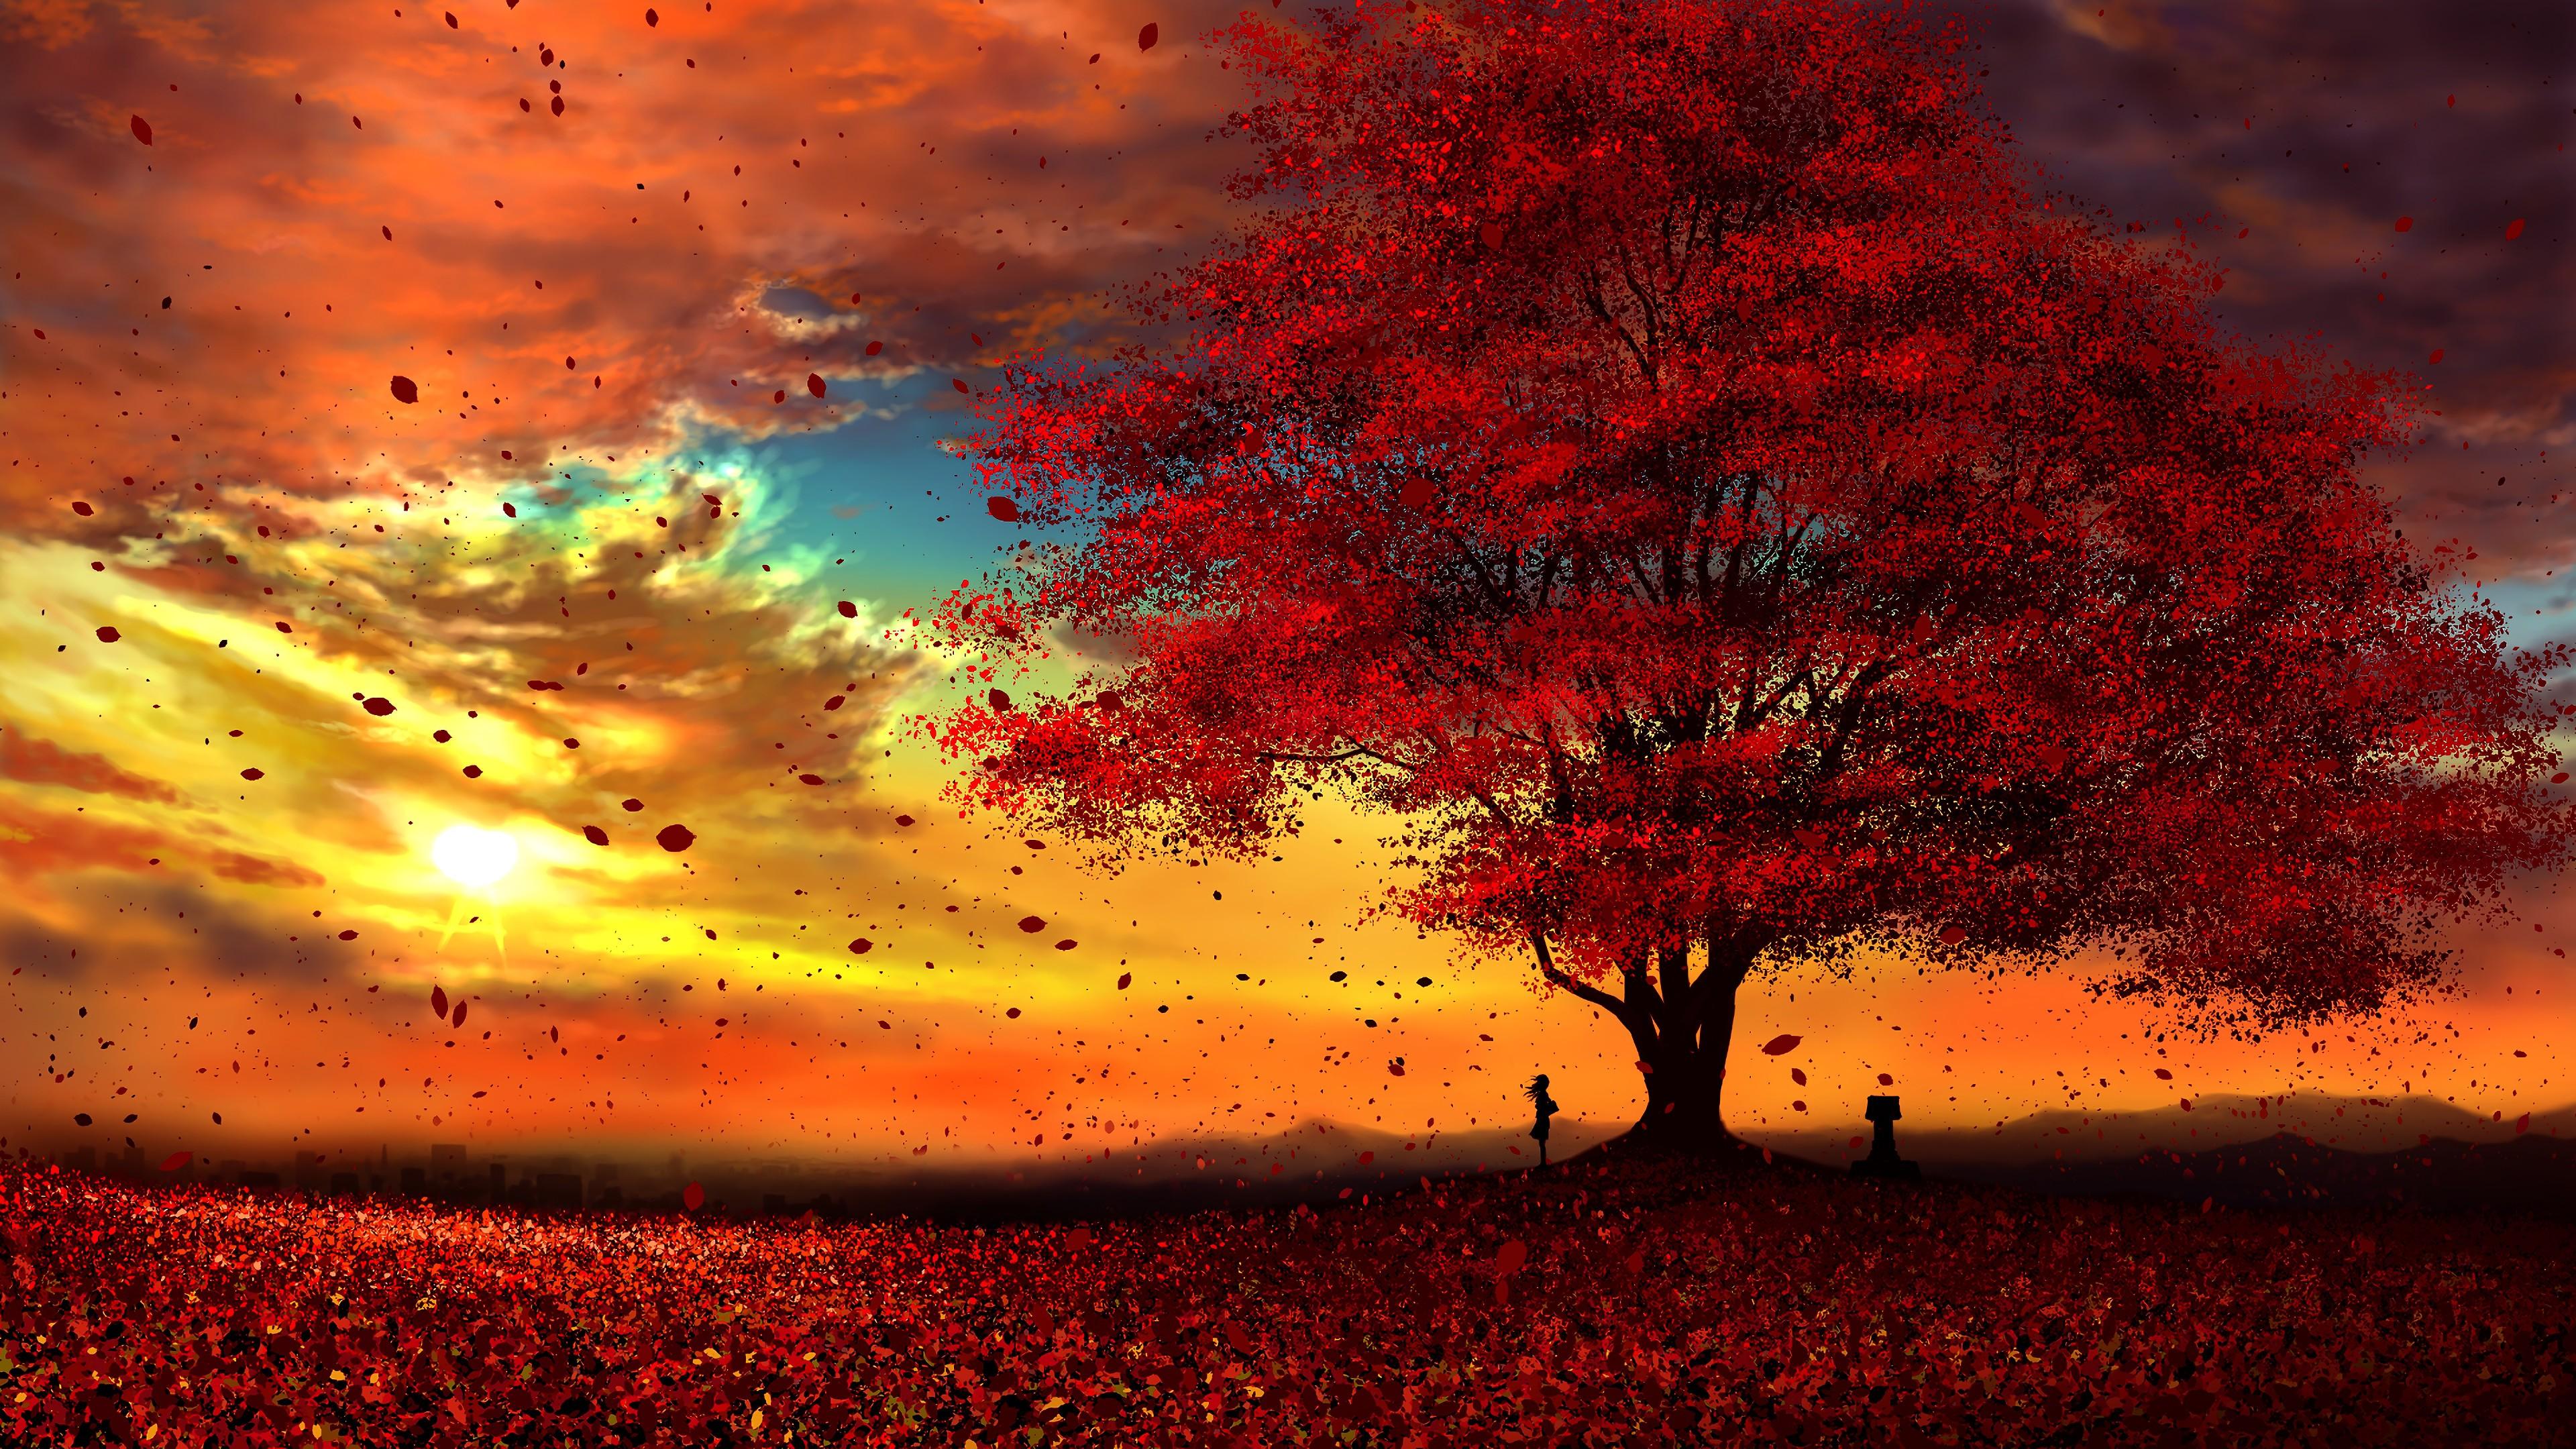 Anime Autumn Scenery Sunset 4K Wallpaper